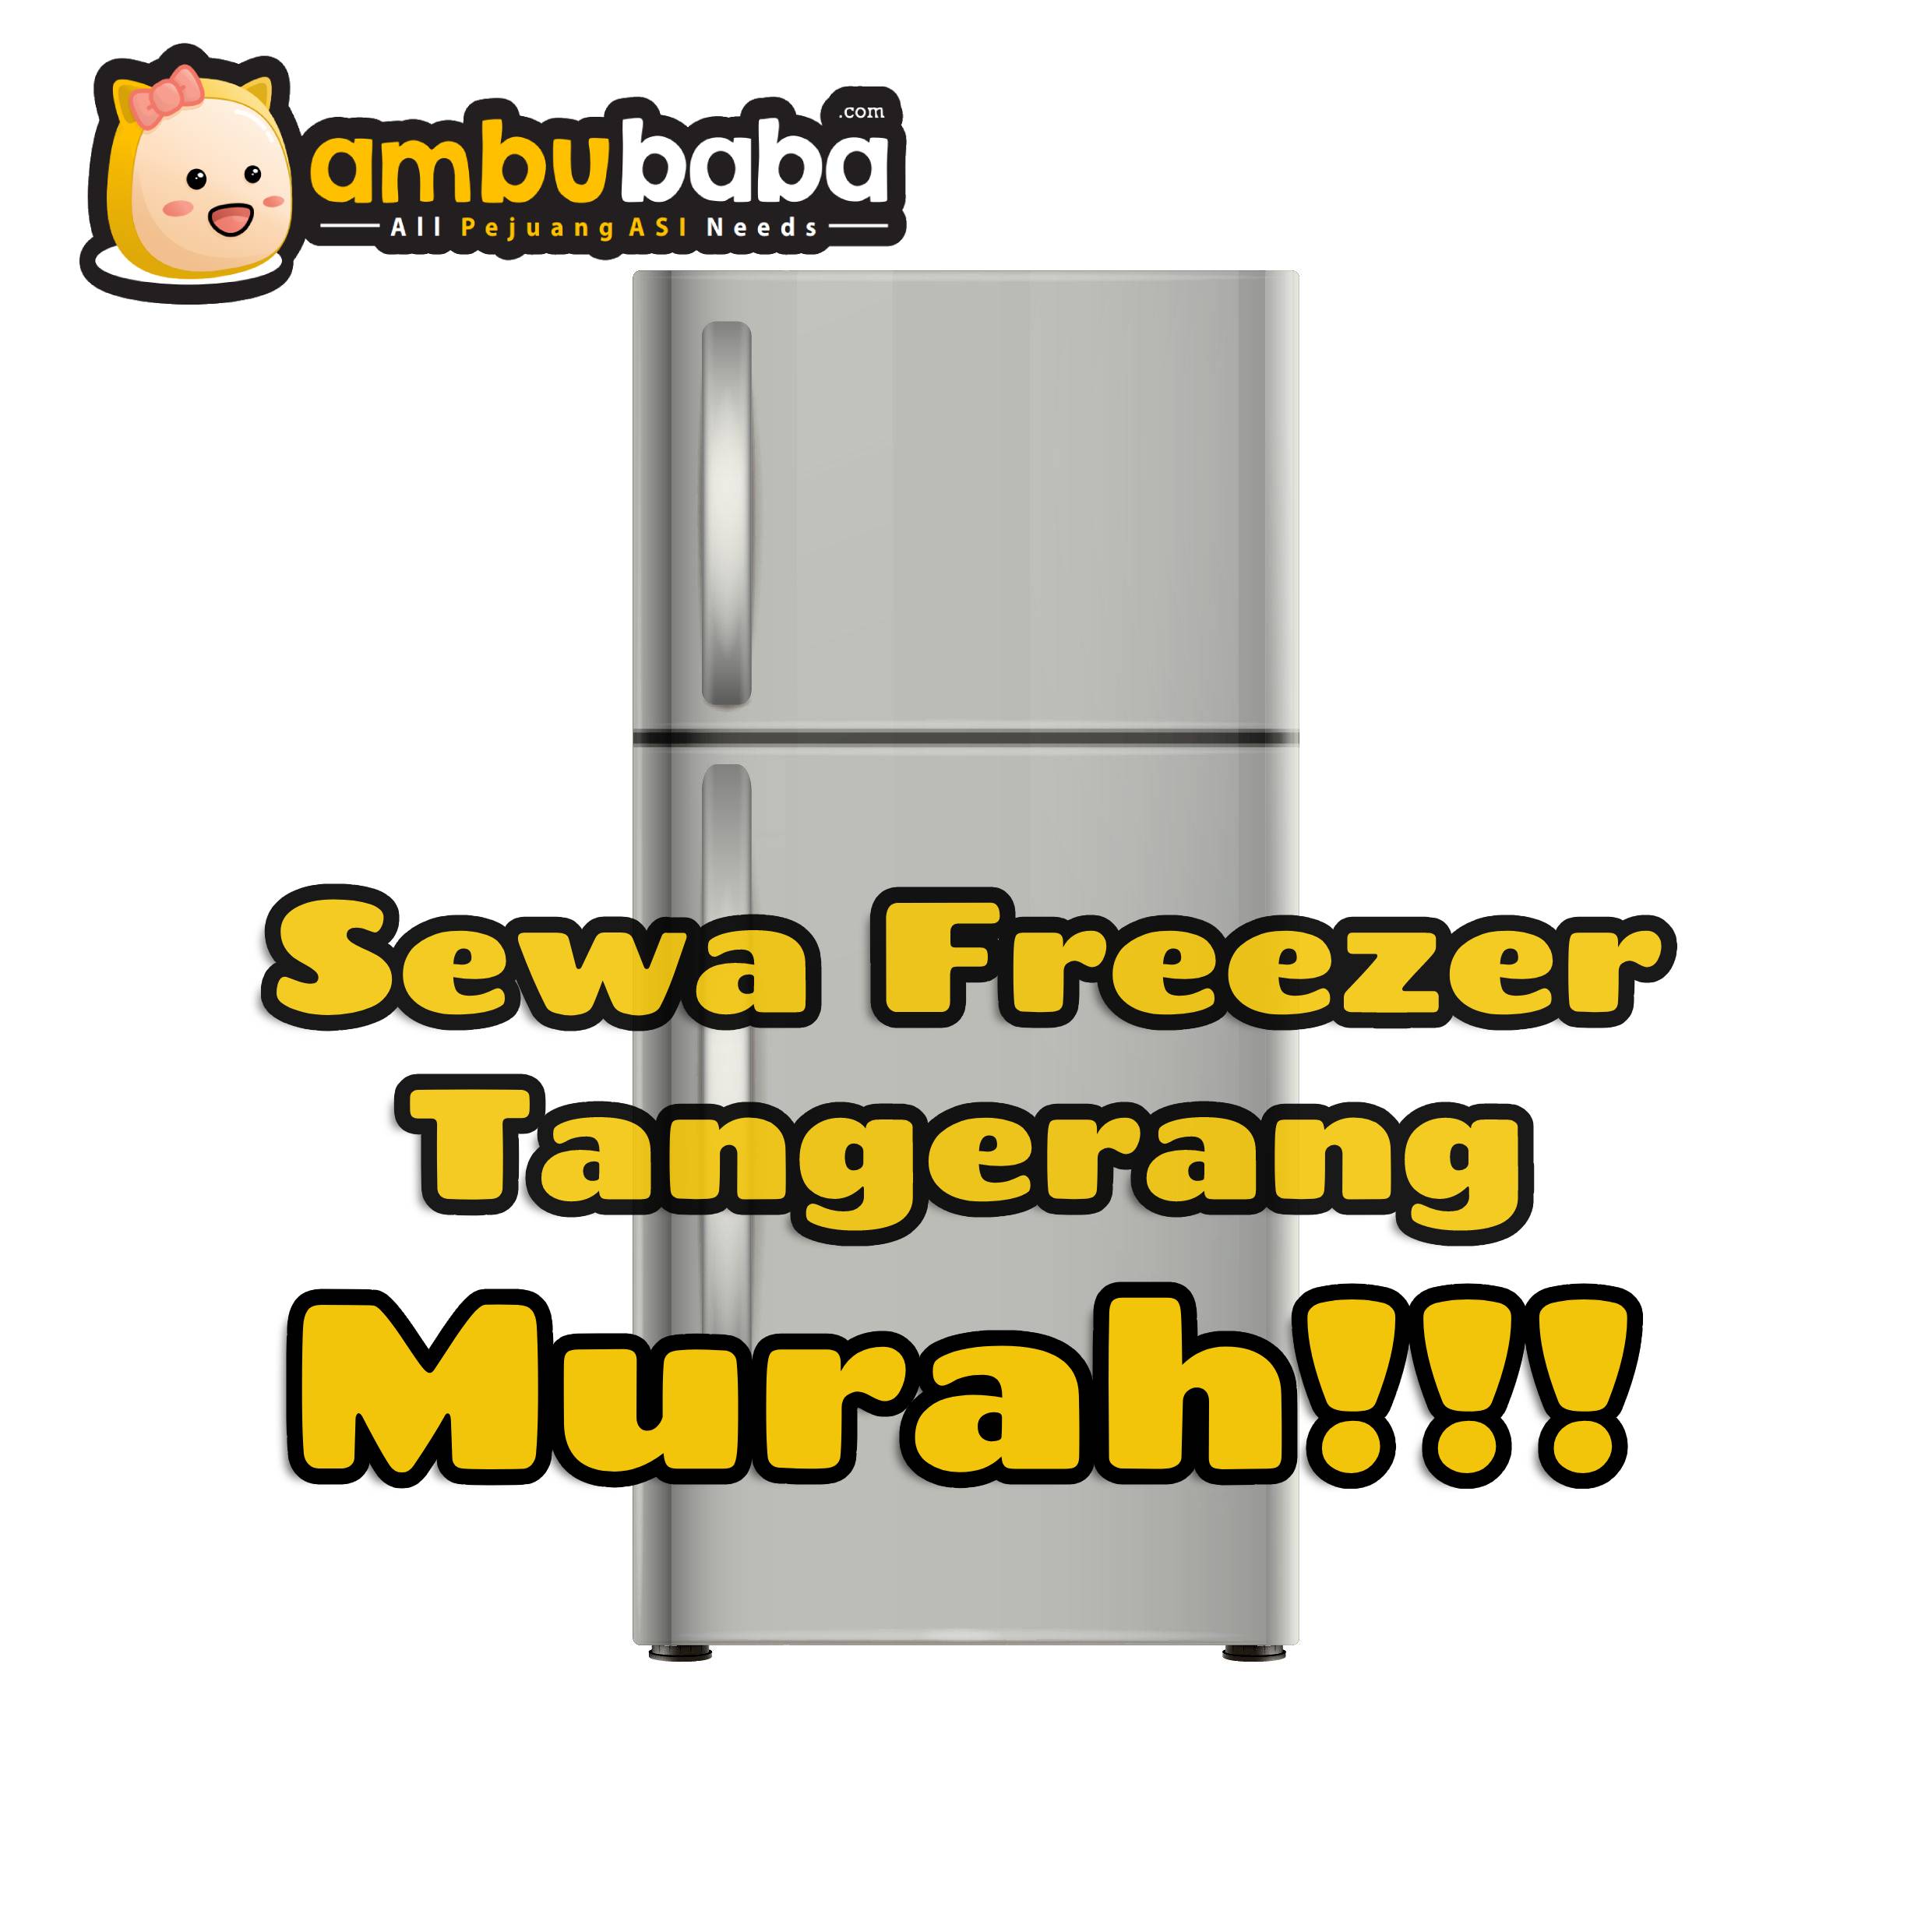 Butuh Freezer untuk ASI ? Hubungi Sewa Freezer Tangerang Murah!!!